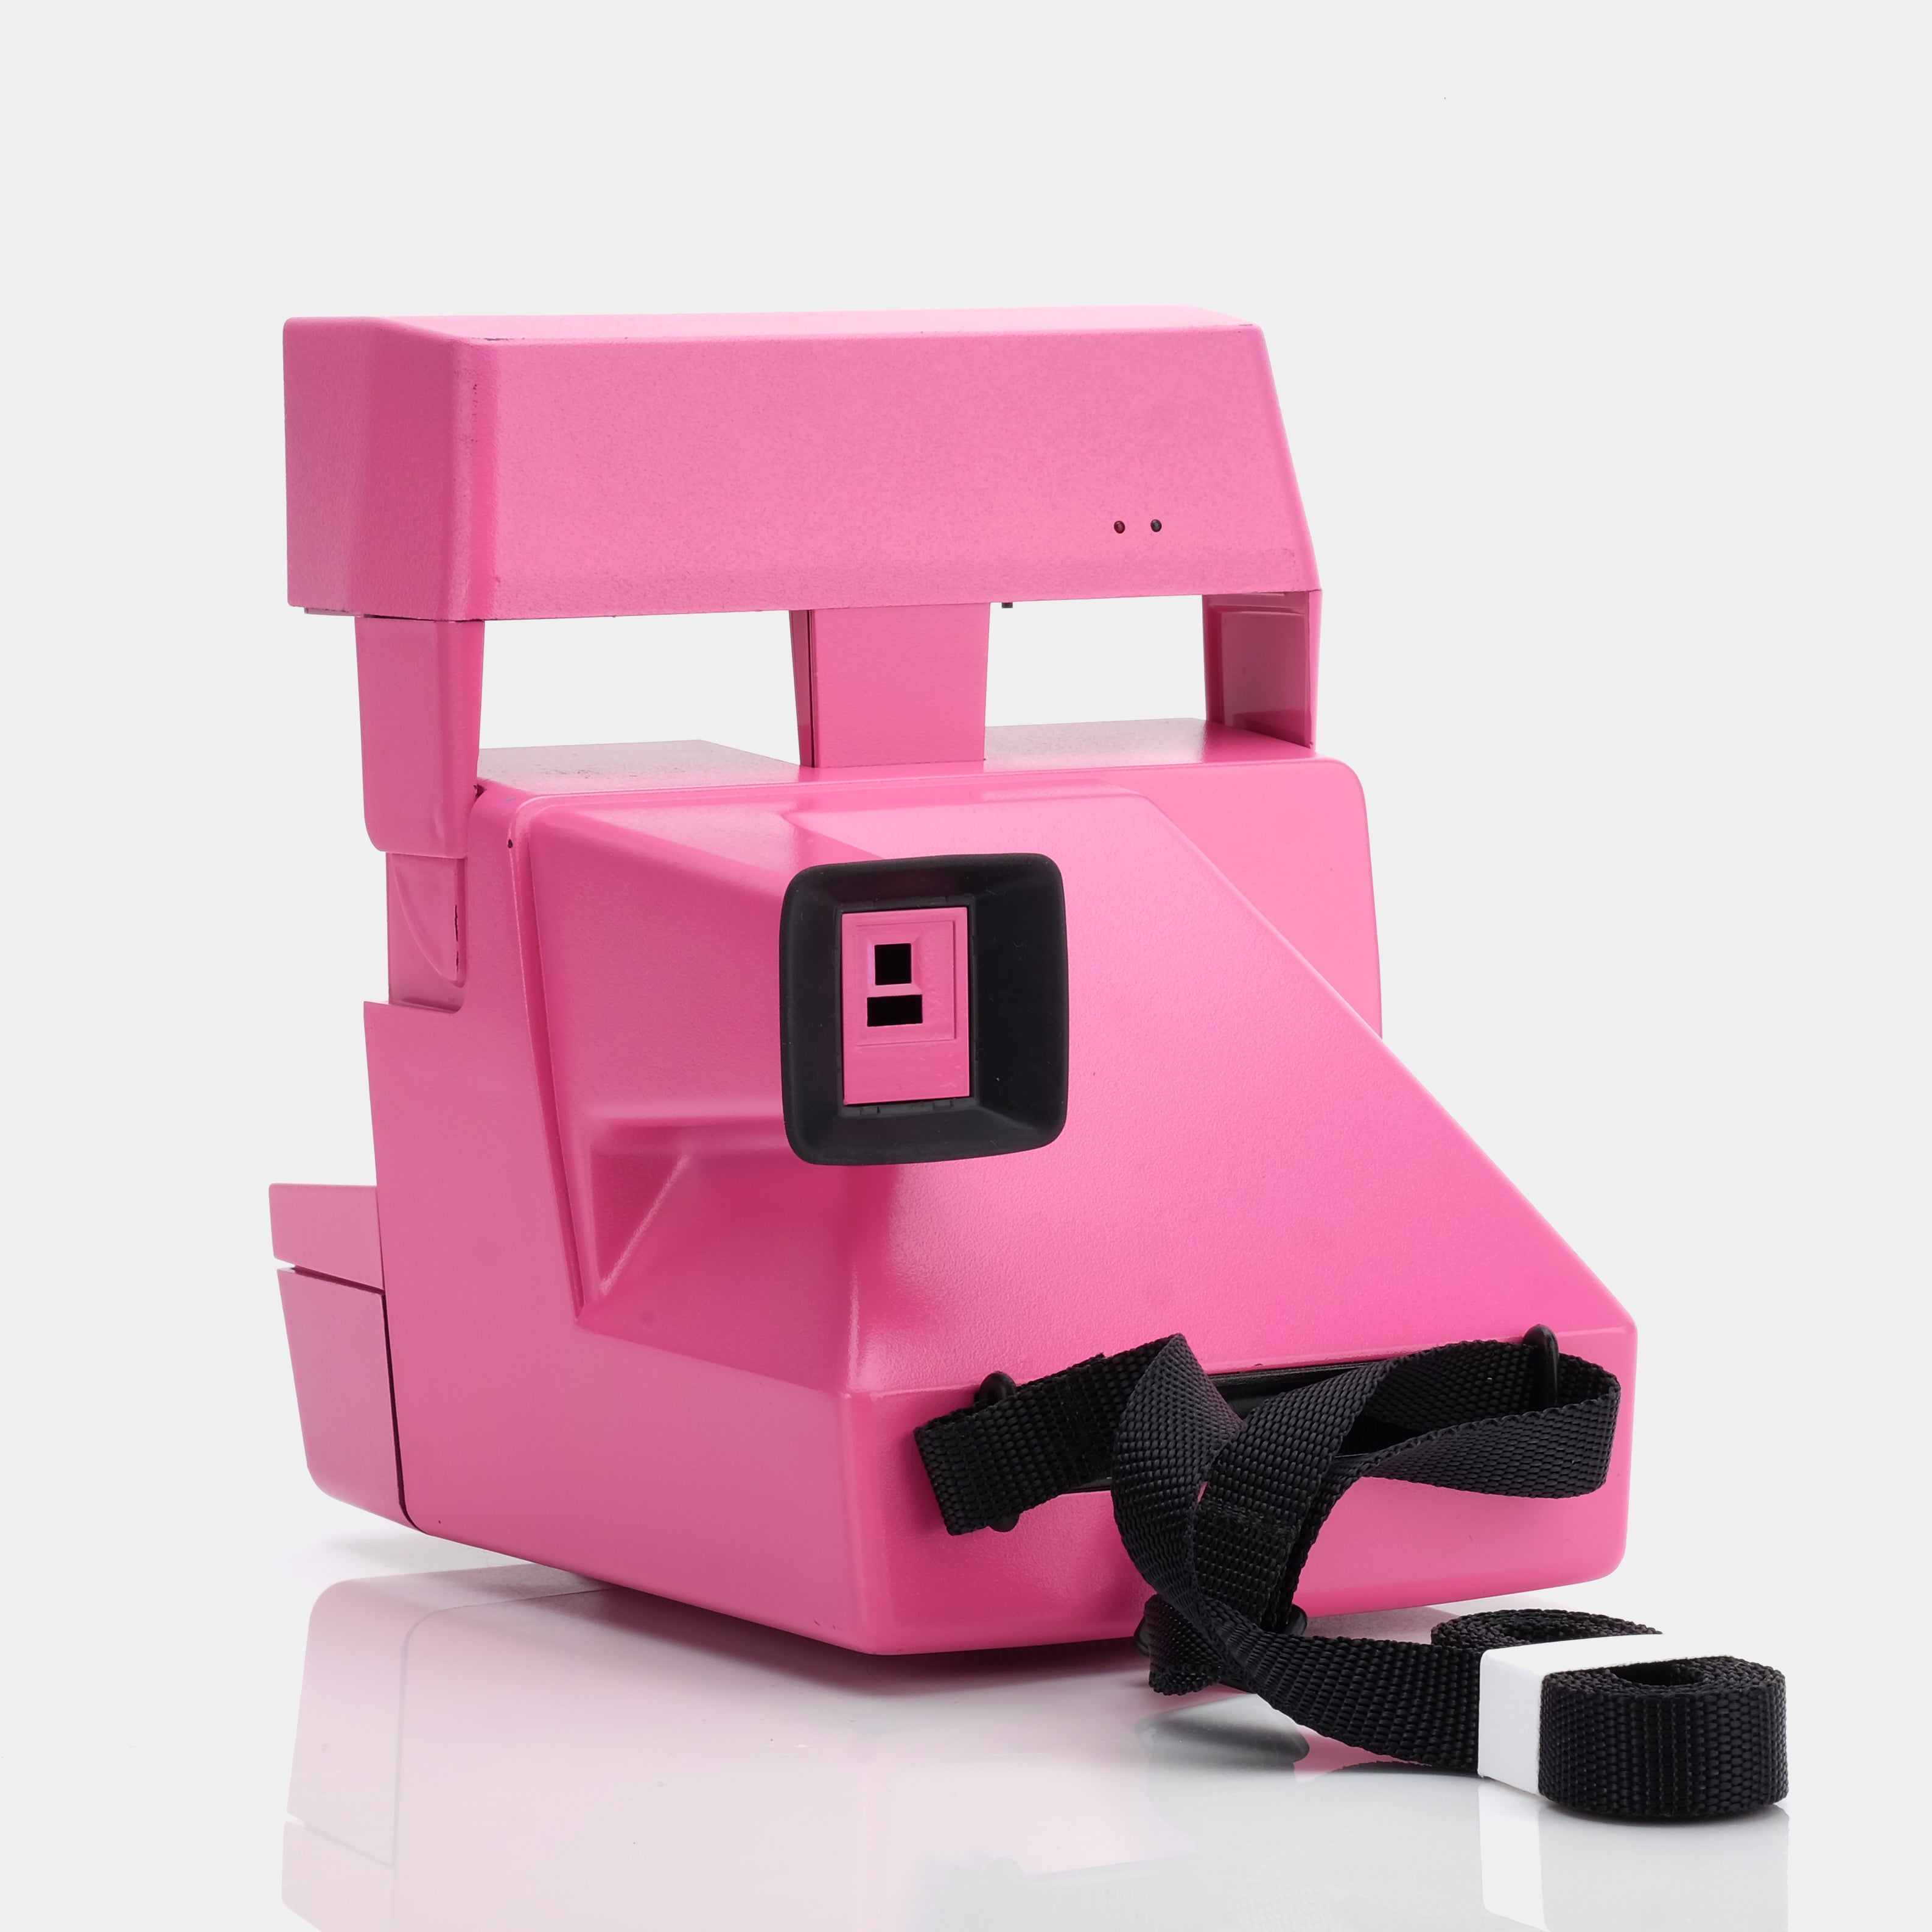 Polaroid 600 Bubblegum Pink Instant Film Camera